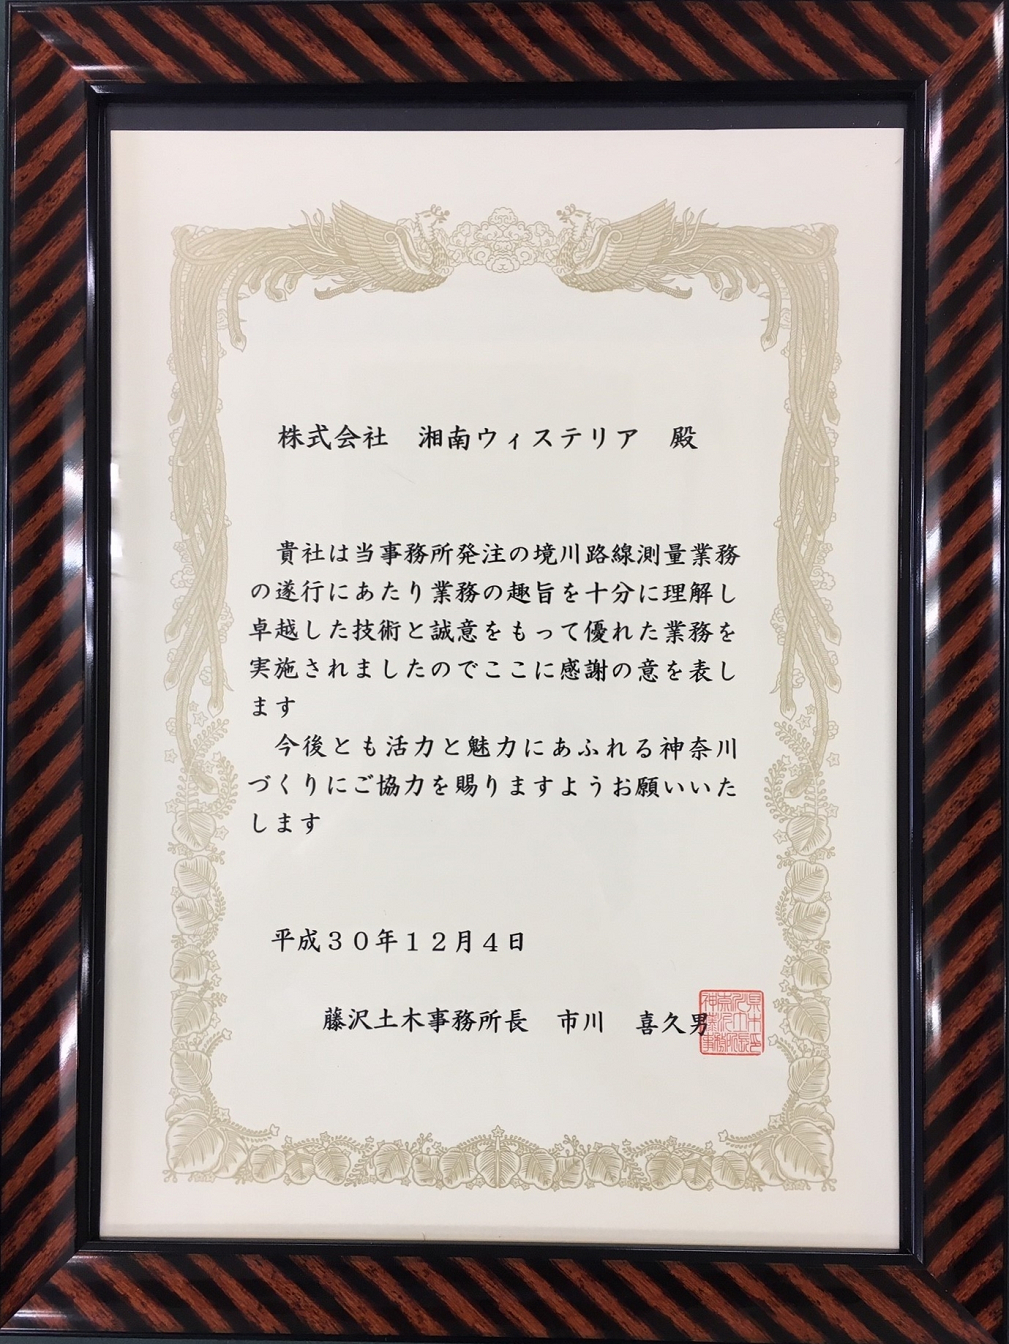 湘南藤沢エリアの測量・補償コンサルタント会社。